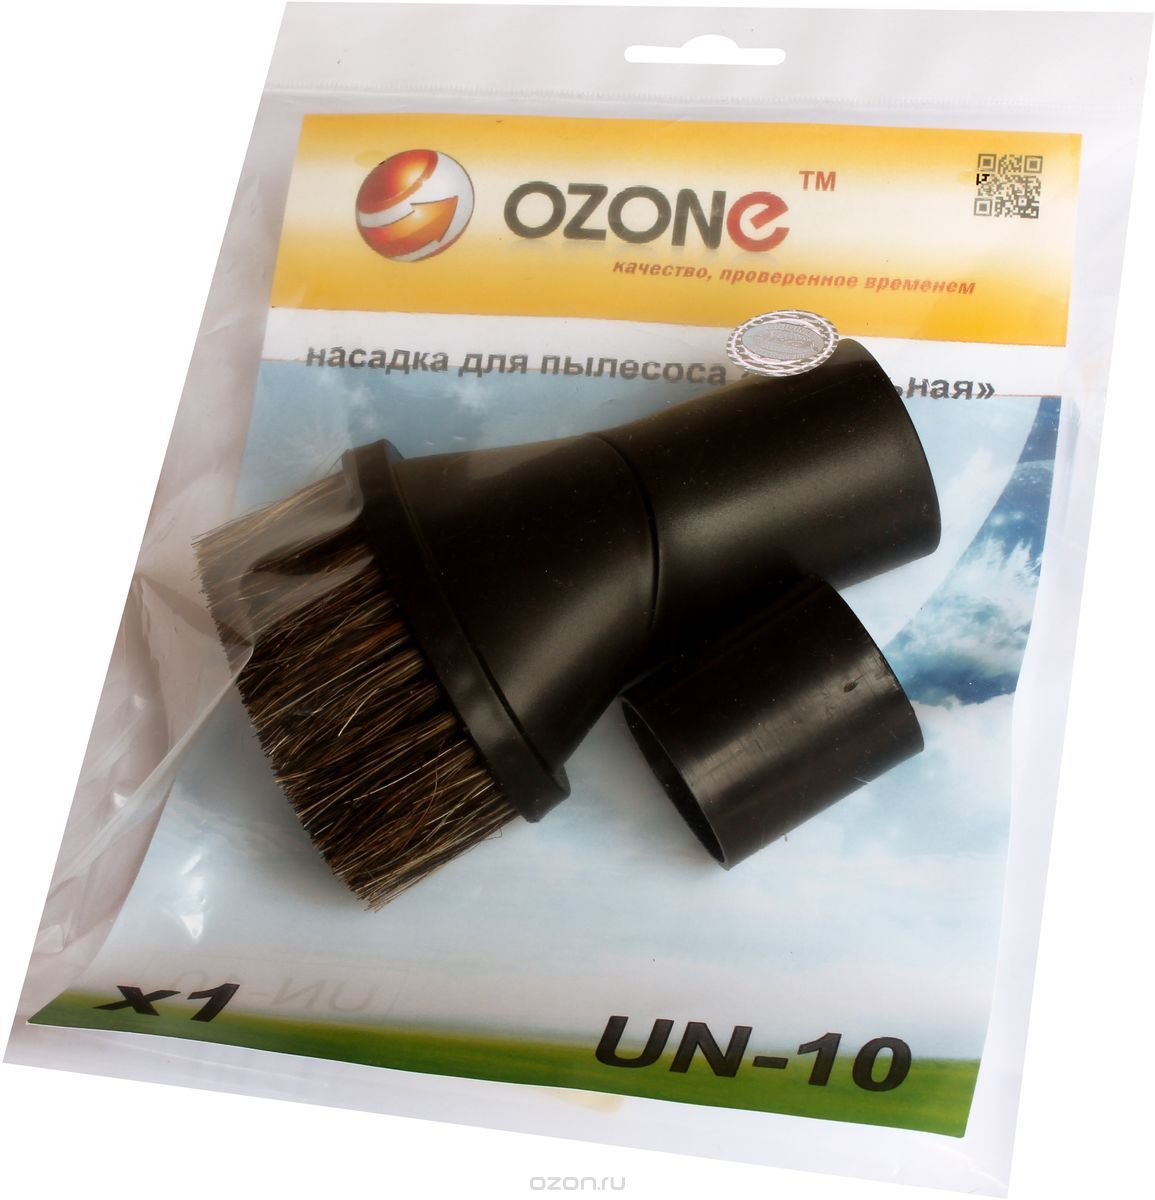 Ozone UN-10  